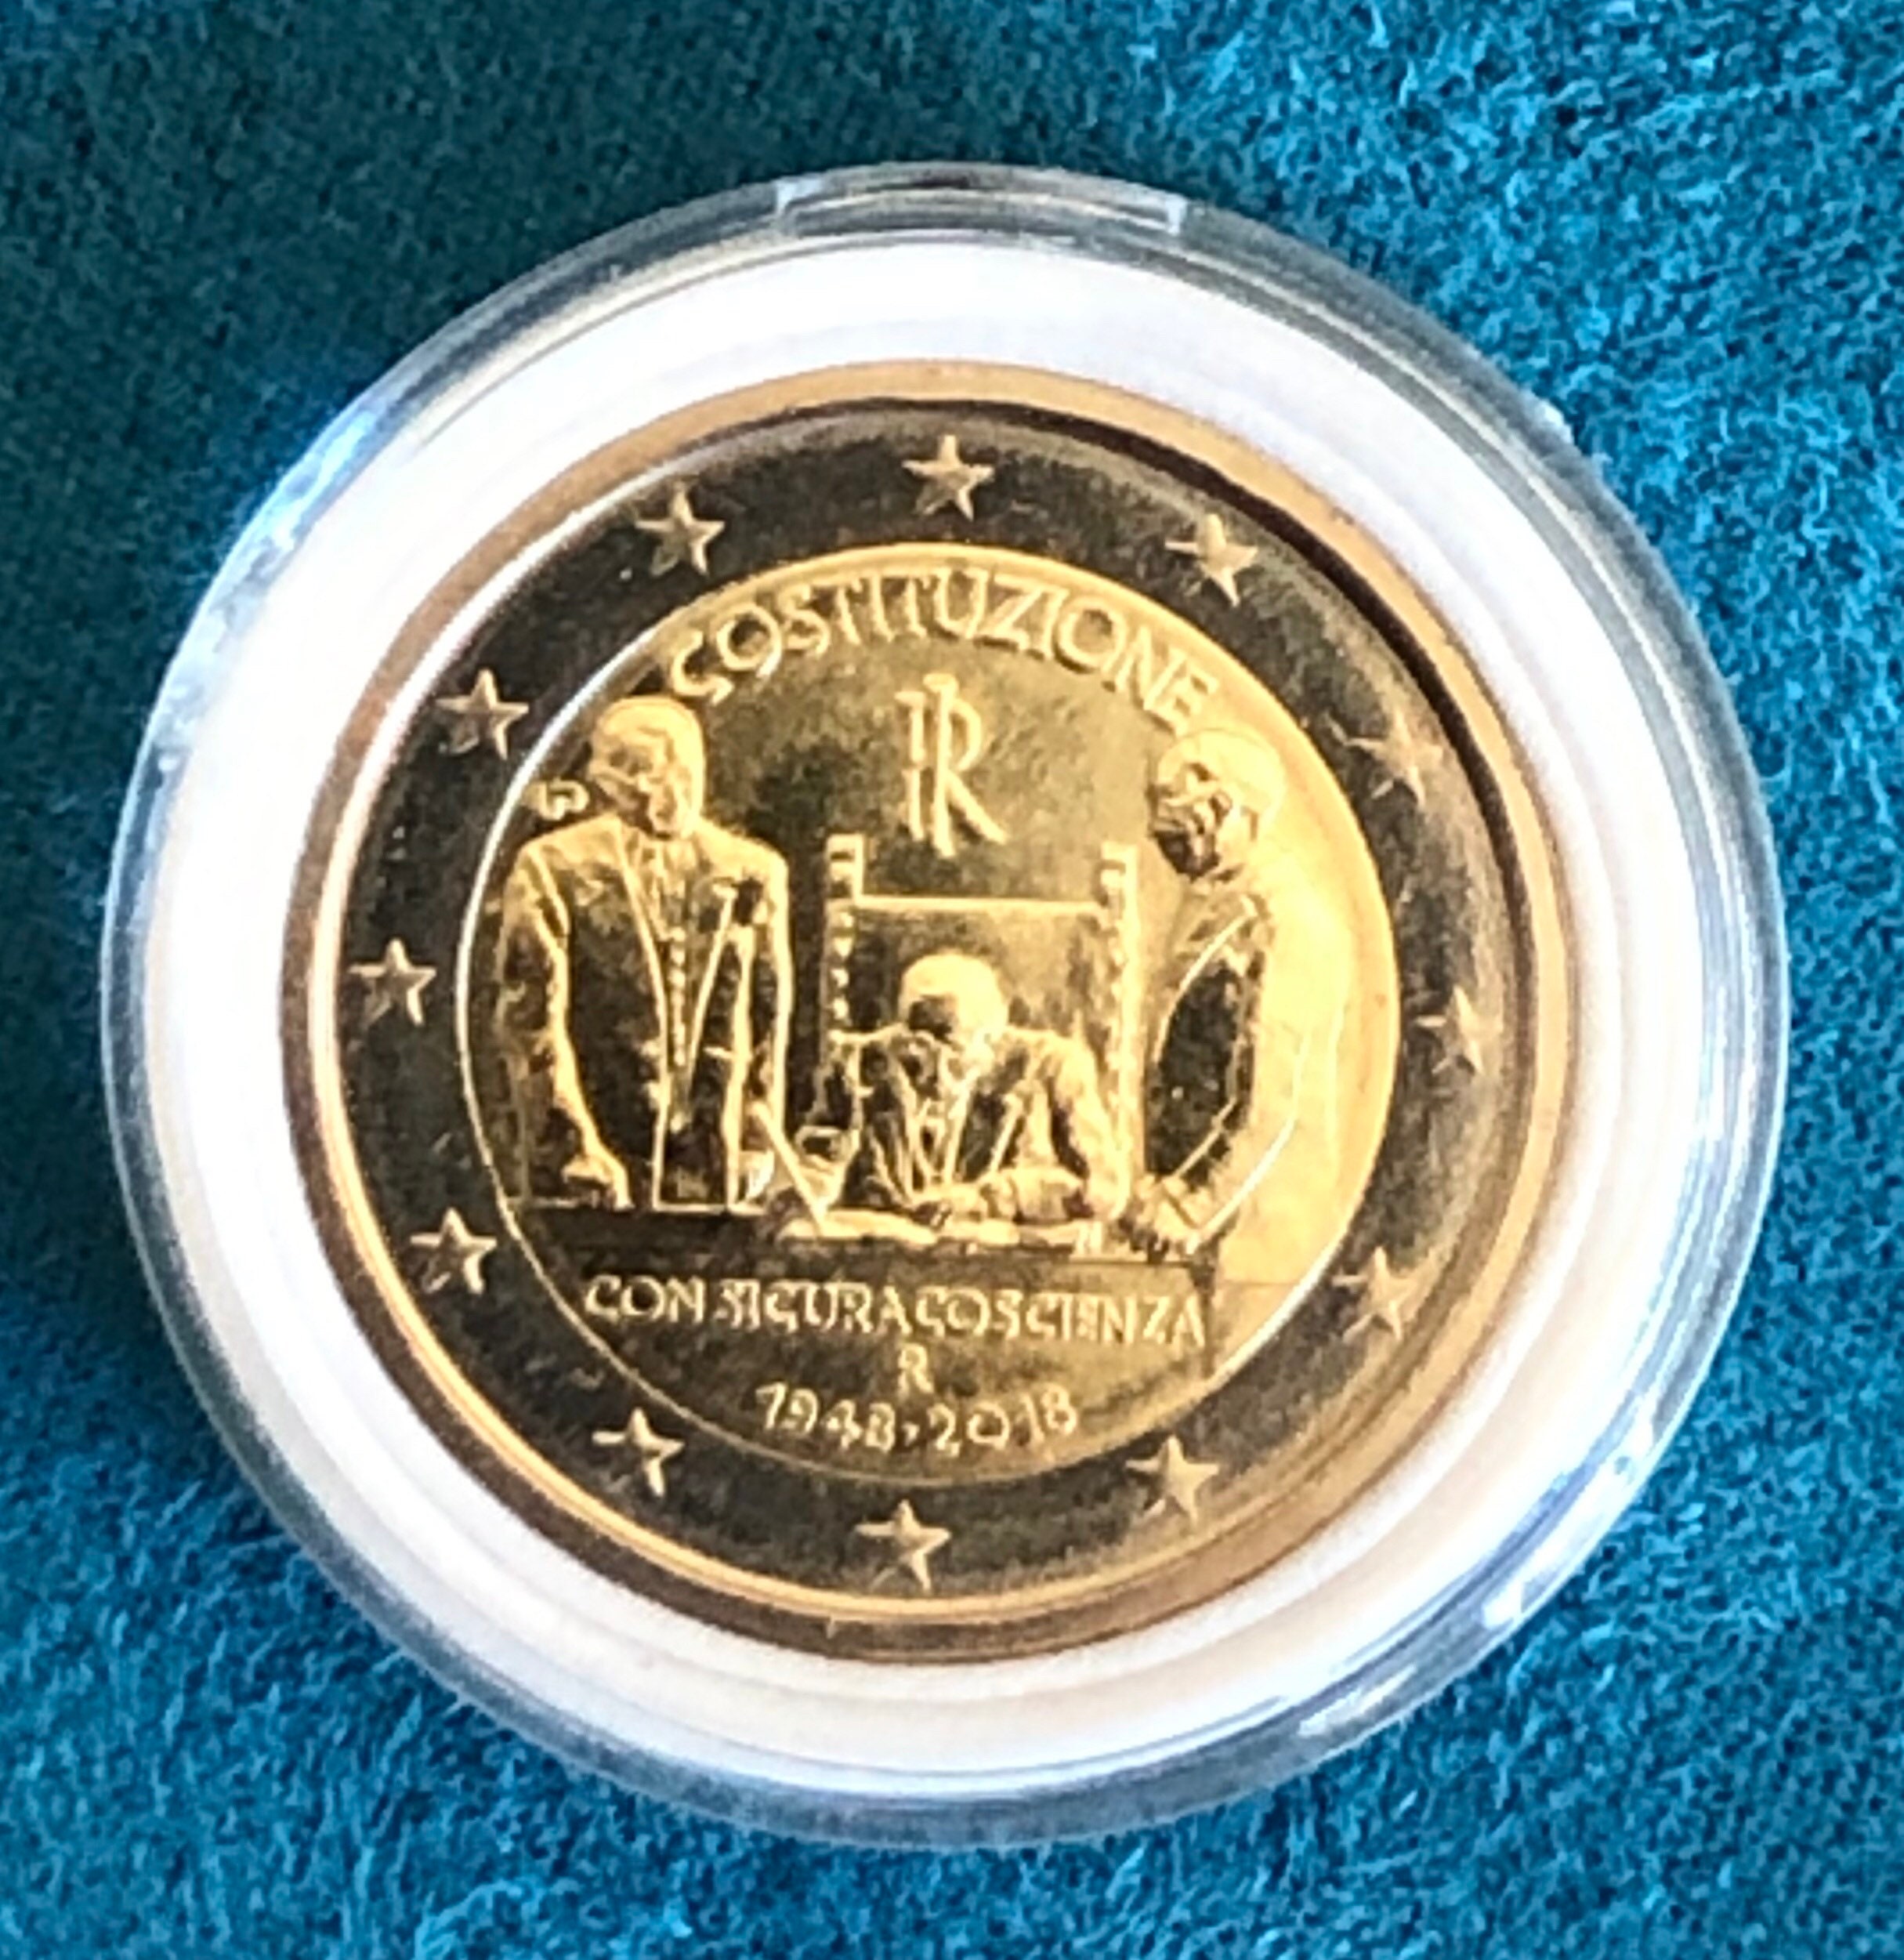 Coin 2 euro Italy Italia 2018 commemorative Costituzione con sicura  coscienza Italy/Italian Costitution 70 years -  Italia